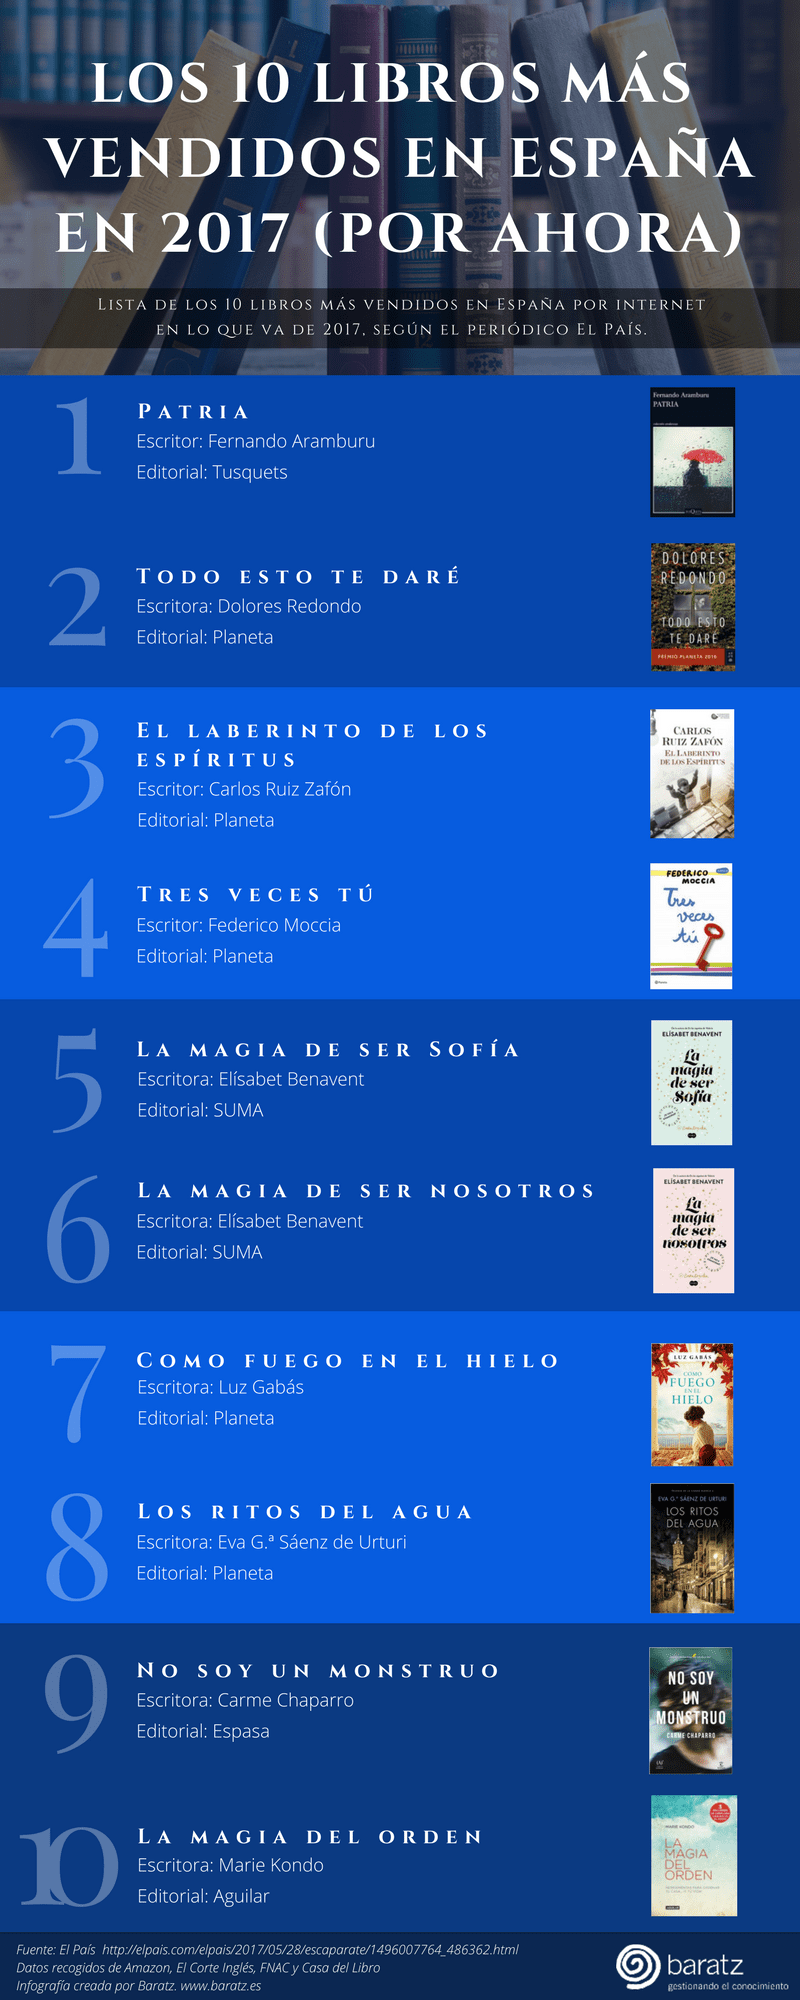 Los 10 libros más vendidos en España en 2017 (por ahora)